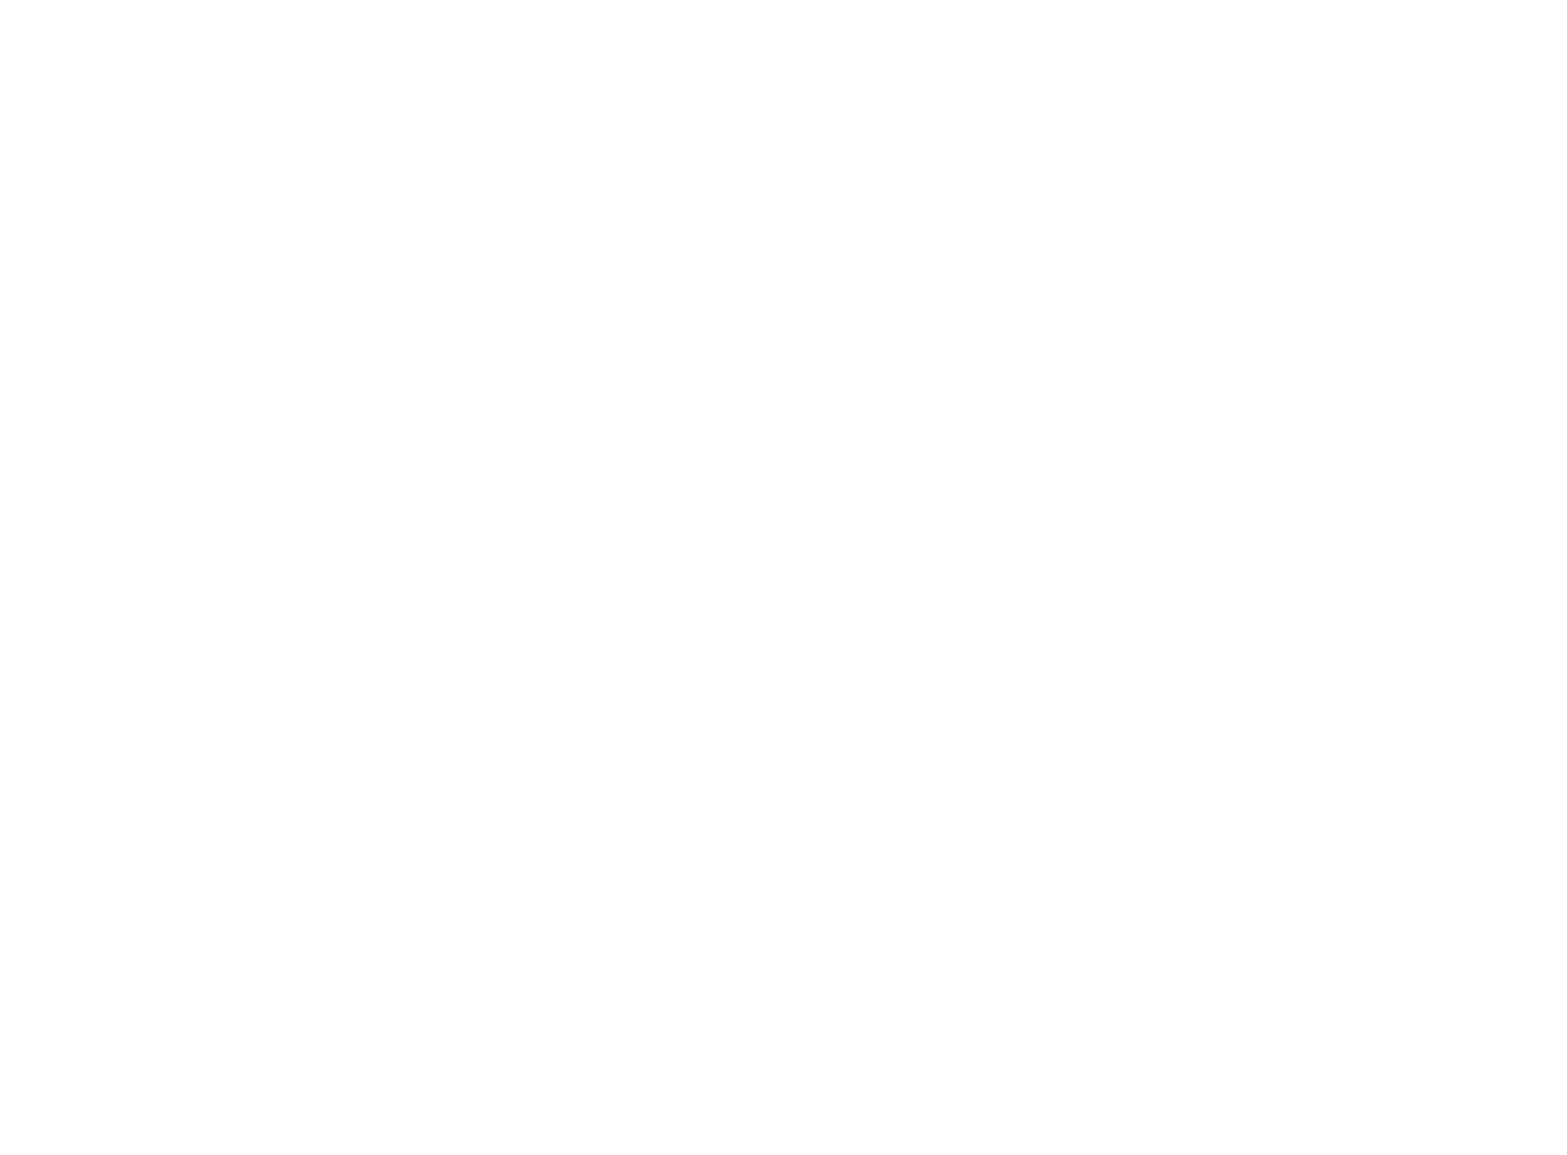 GPA logo for dark backgrounds (transparent PNG)